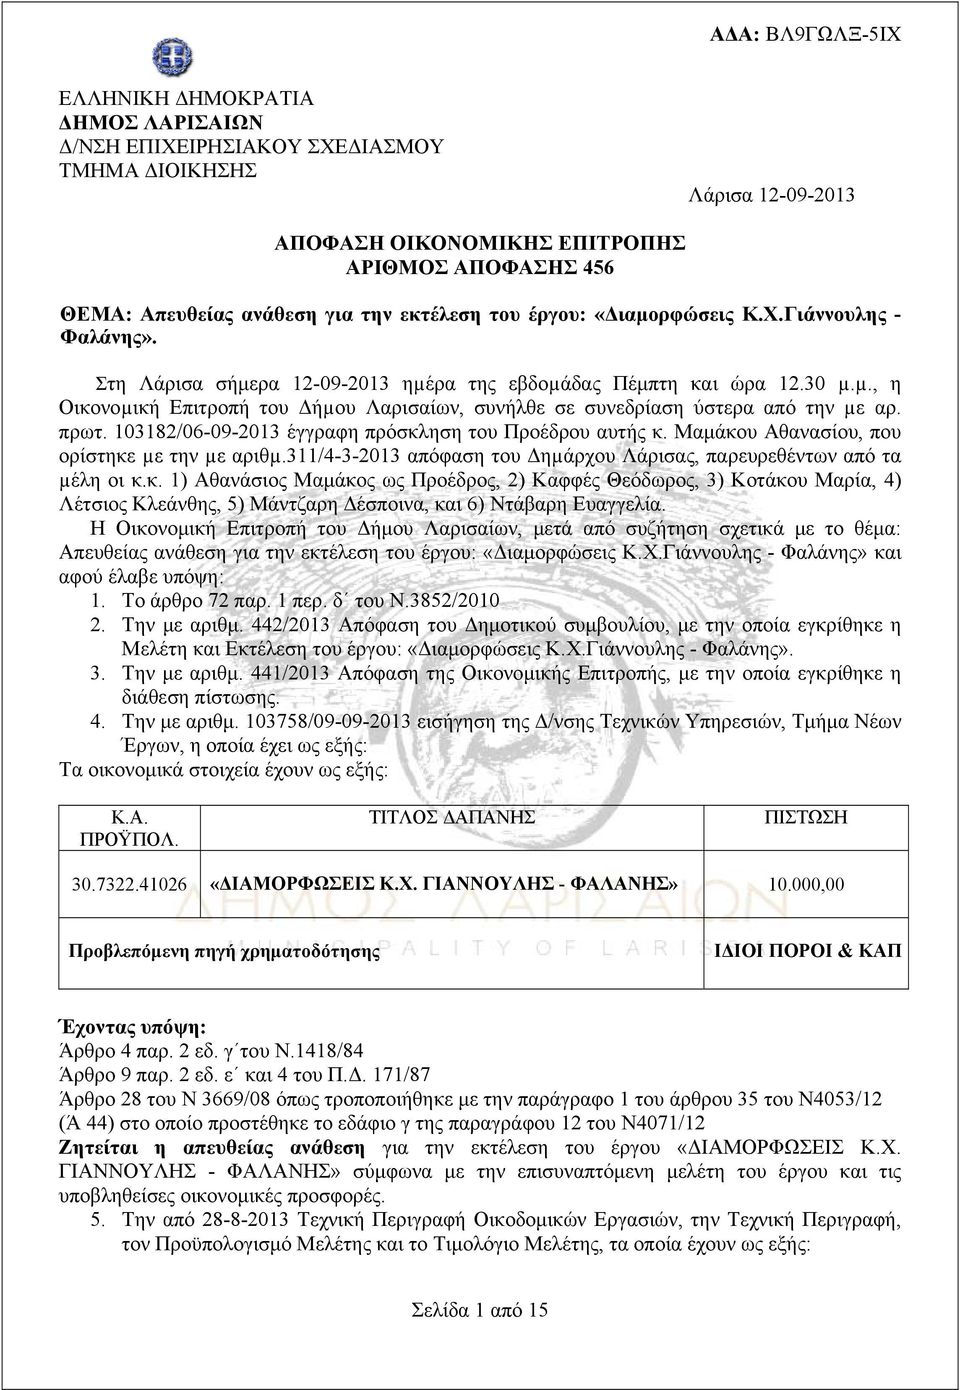 πρωτ. 103182/06-09-2013 έγγραφη πρόσκληση του Προέδρου αυτής κ. Μαμάκου Αθανασίου, που ορίστηκε µε την µε αριθµ.311/4-3-2013 απόφαση του Δηµάρχου Λάρισας, παρευρεθέντων από τα µέλη οι κ.κ. 1) Αθανάσιος Μαμάκος ως Προέδρος, 2) Καφφές Θεόδωρος, 3) Κοτάκου Μαρία, 4) Λέτσιος Κλεάνθης, 5) Μάντζαρη Δέσποινα, και 6) Ντάβαρη Ευαγγελία.